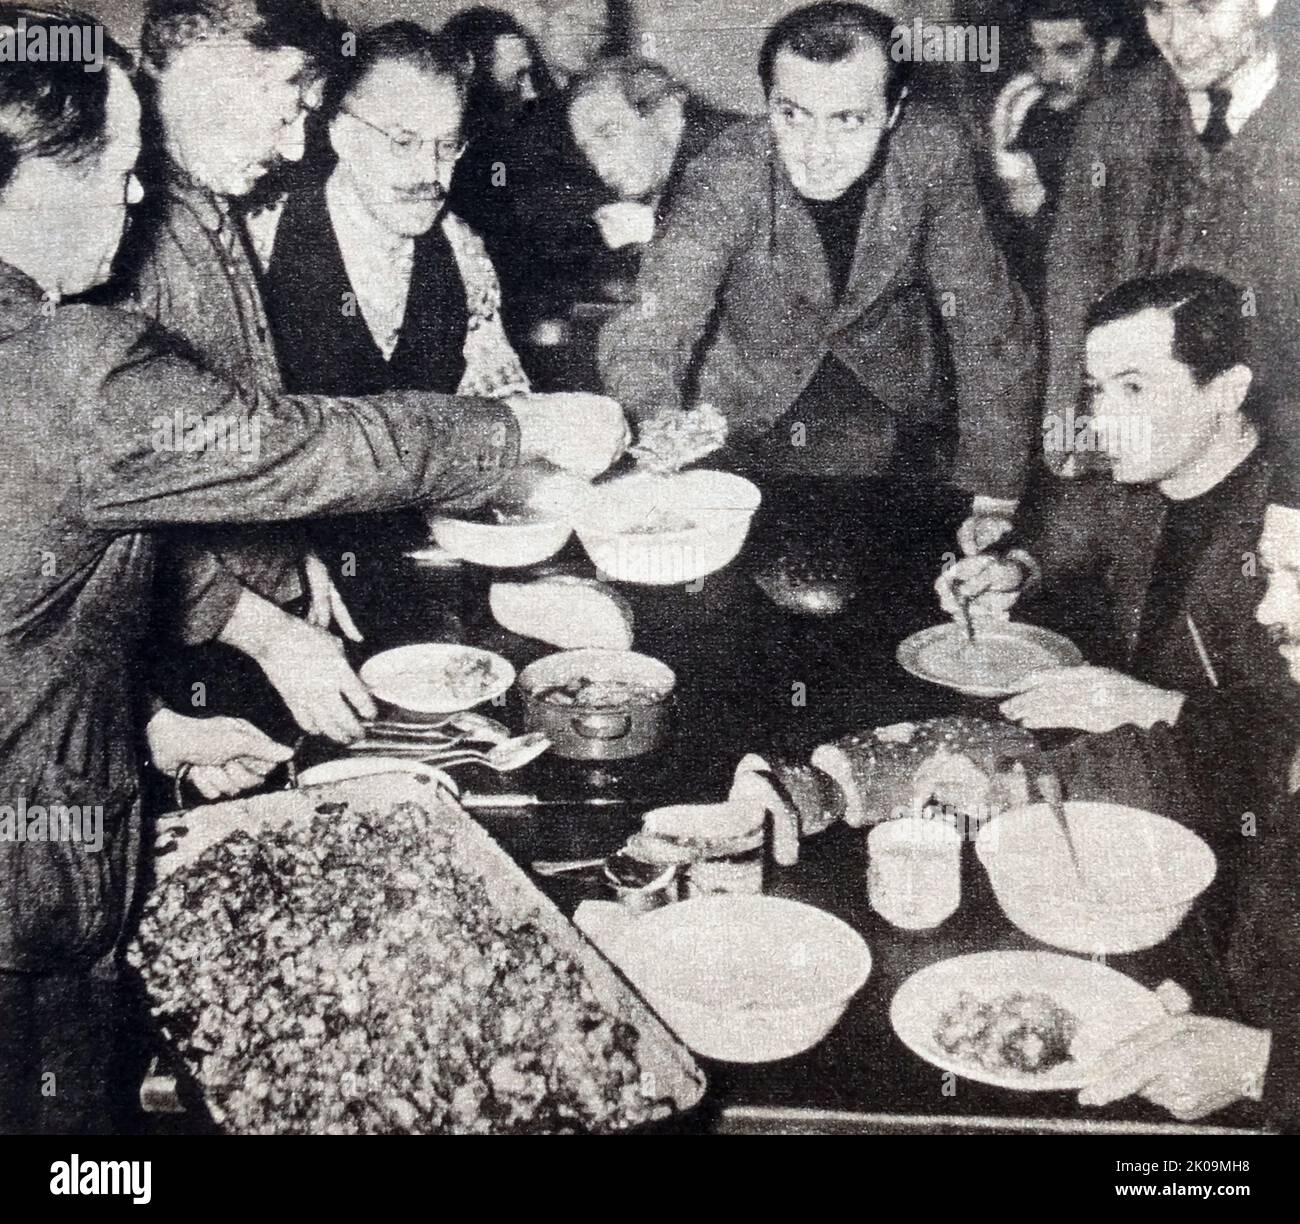 Der französische Gefängnisaufsichter serviert während des Zweiten Weltkriegs Hash zum Mittagessen auf Schloss Wulzburg, wo die Mehrheit der Gefangenen Franzosen und Briten sind Stockfoto